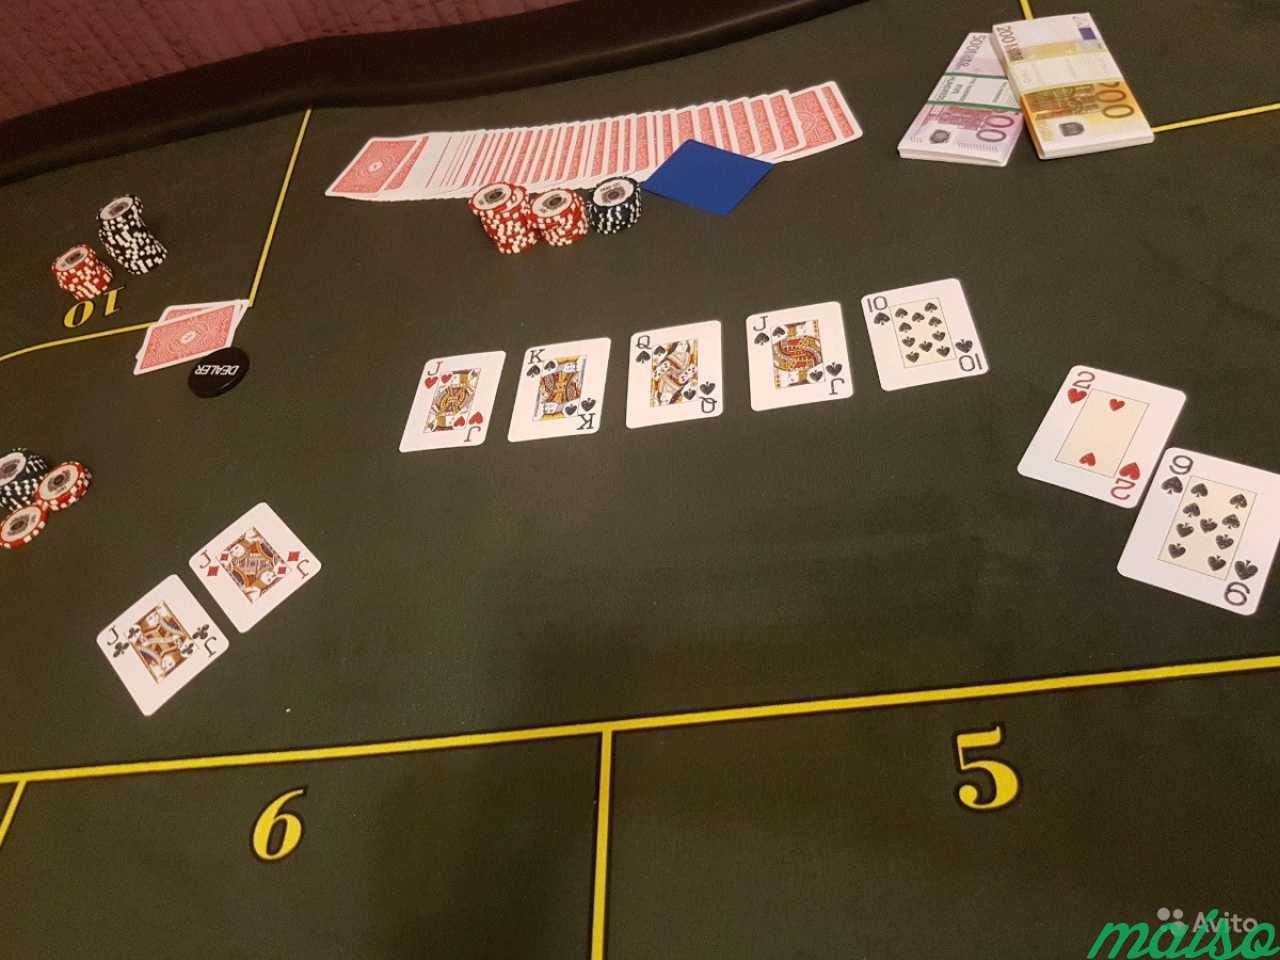 Выездное фан казино с покером, рулеткой, блекджеко в Санкт-Петербурге. Фото 3